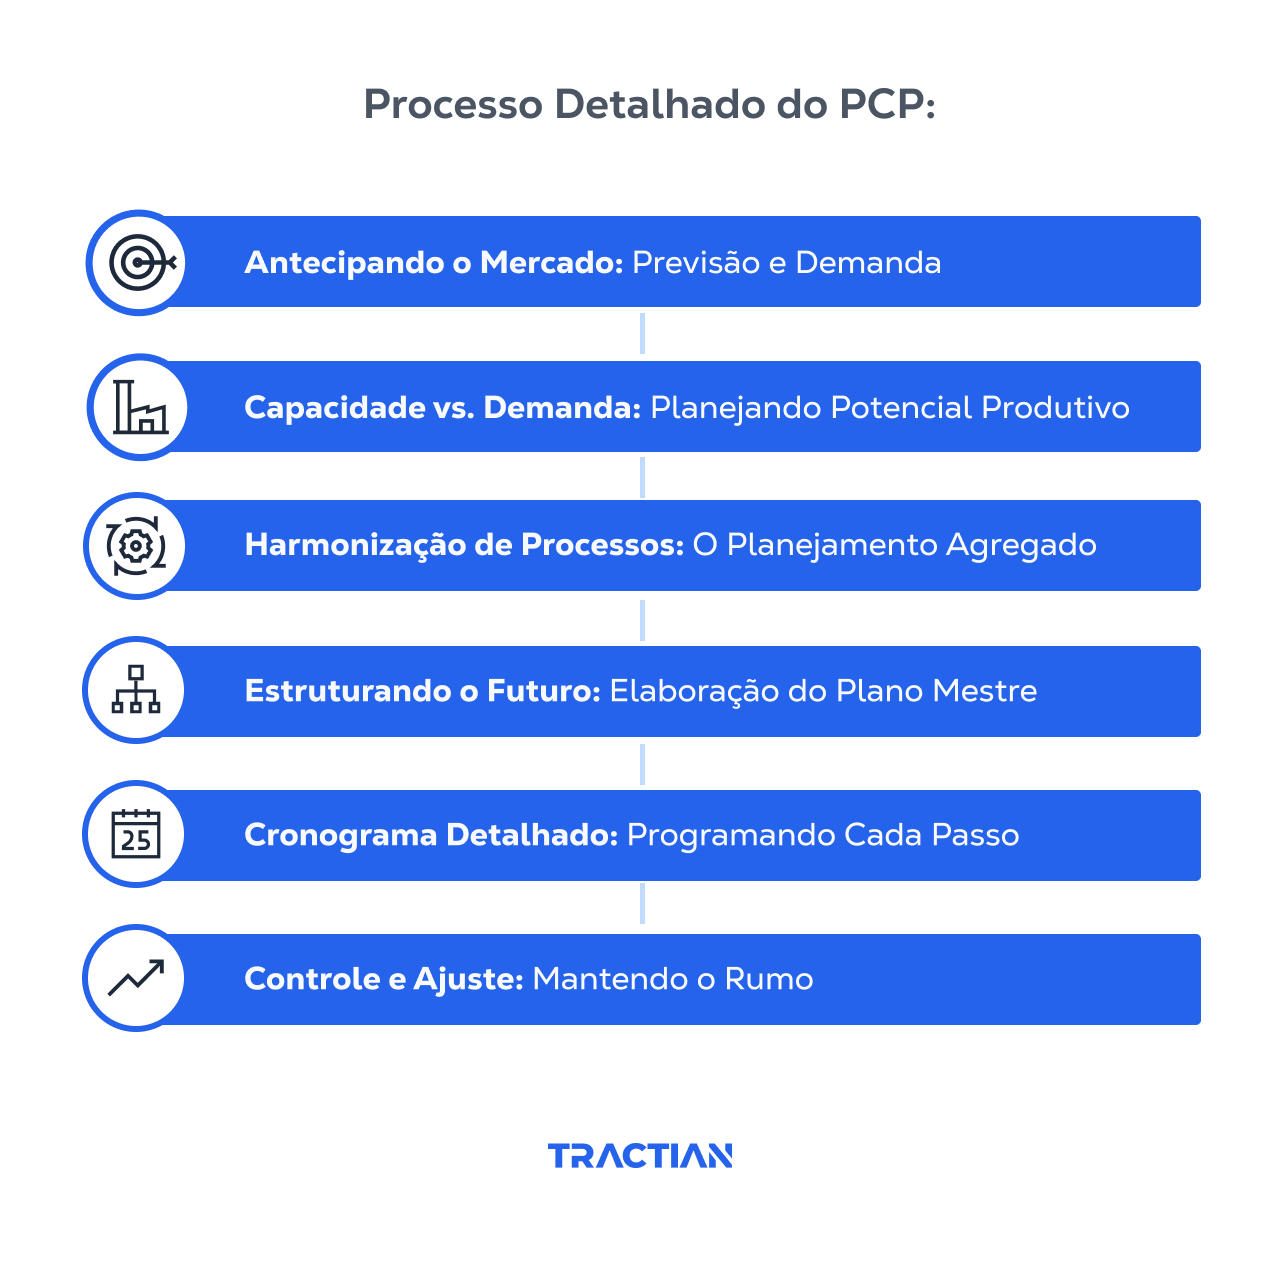 Processos detalhados do PCP